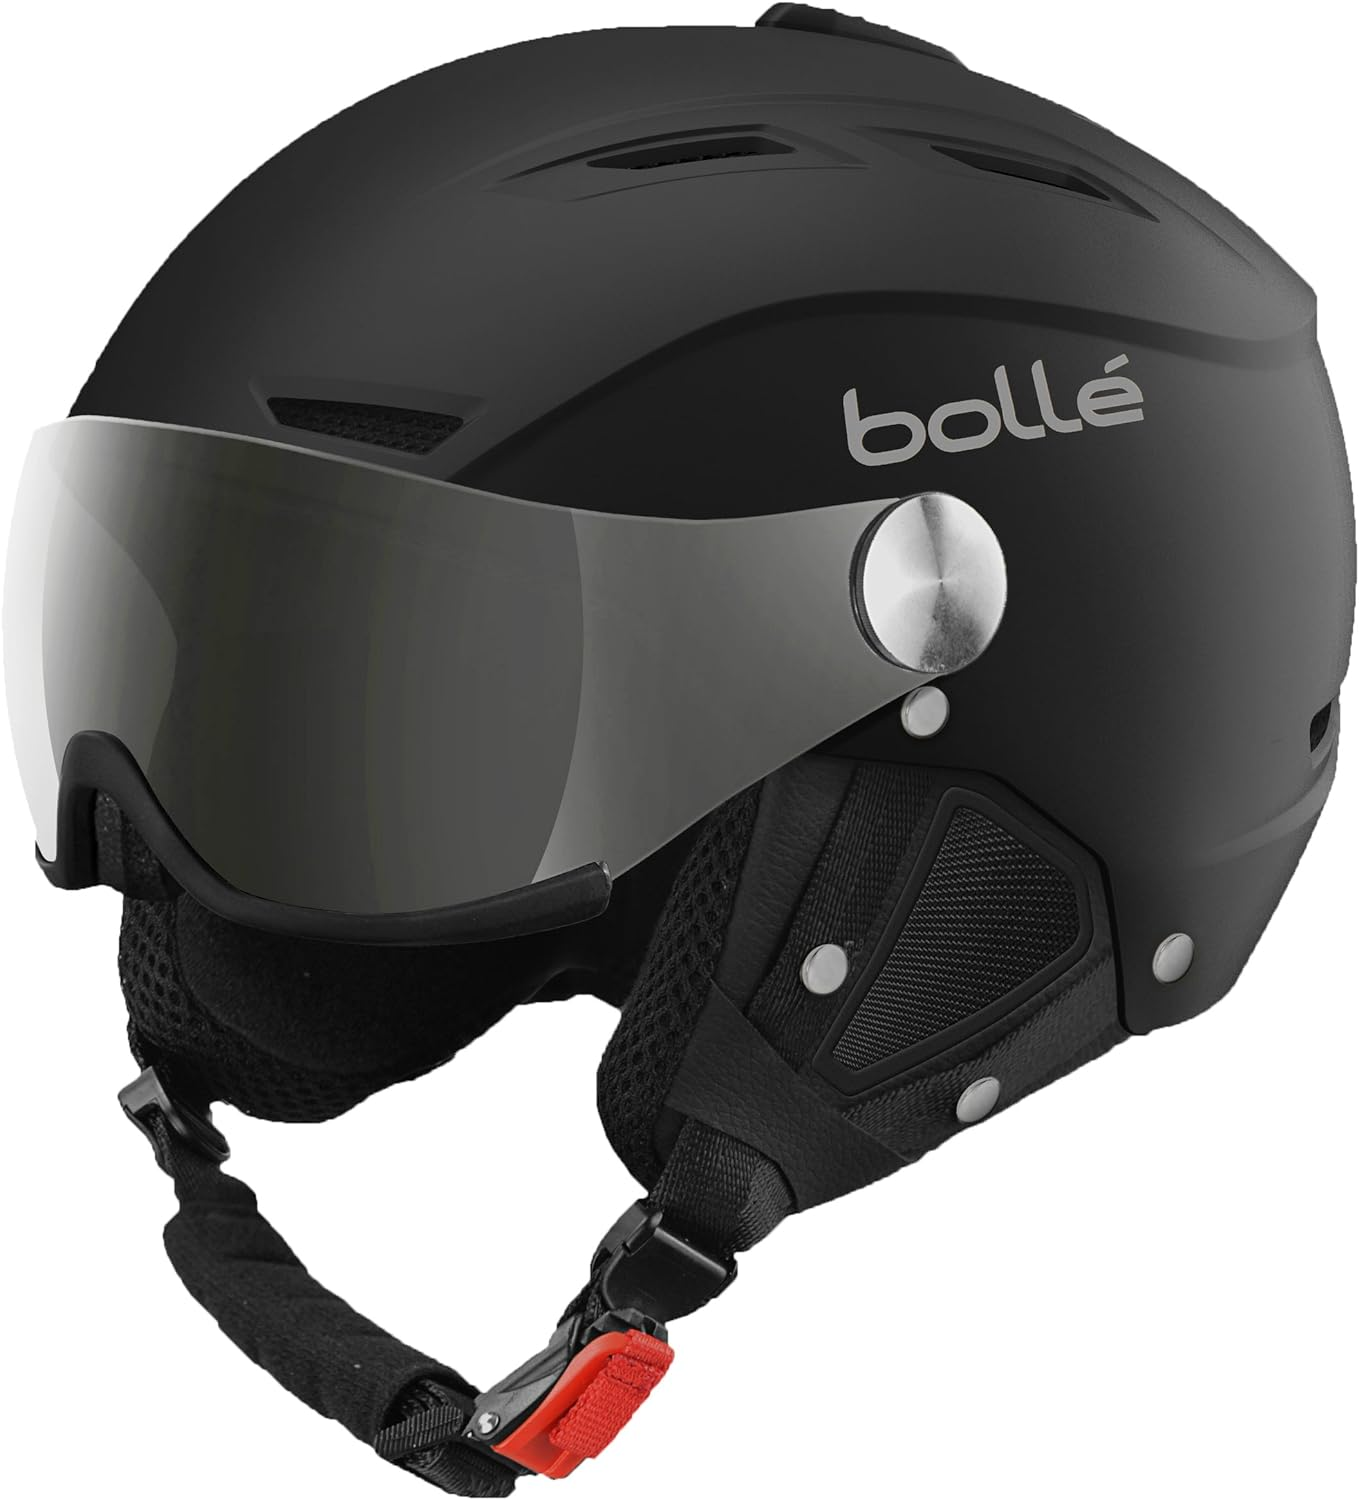 Bollé BACKLINE VISOR Ski Helmet